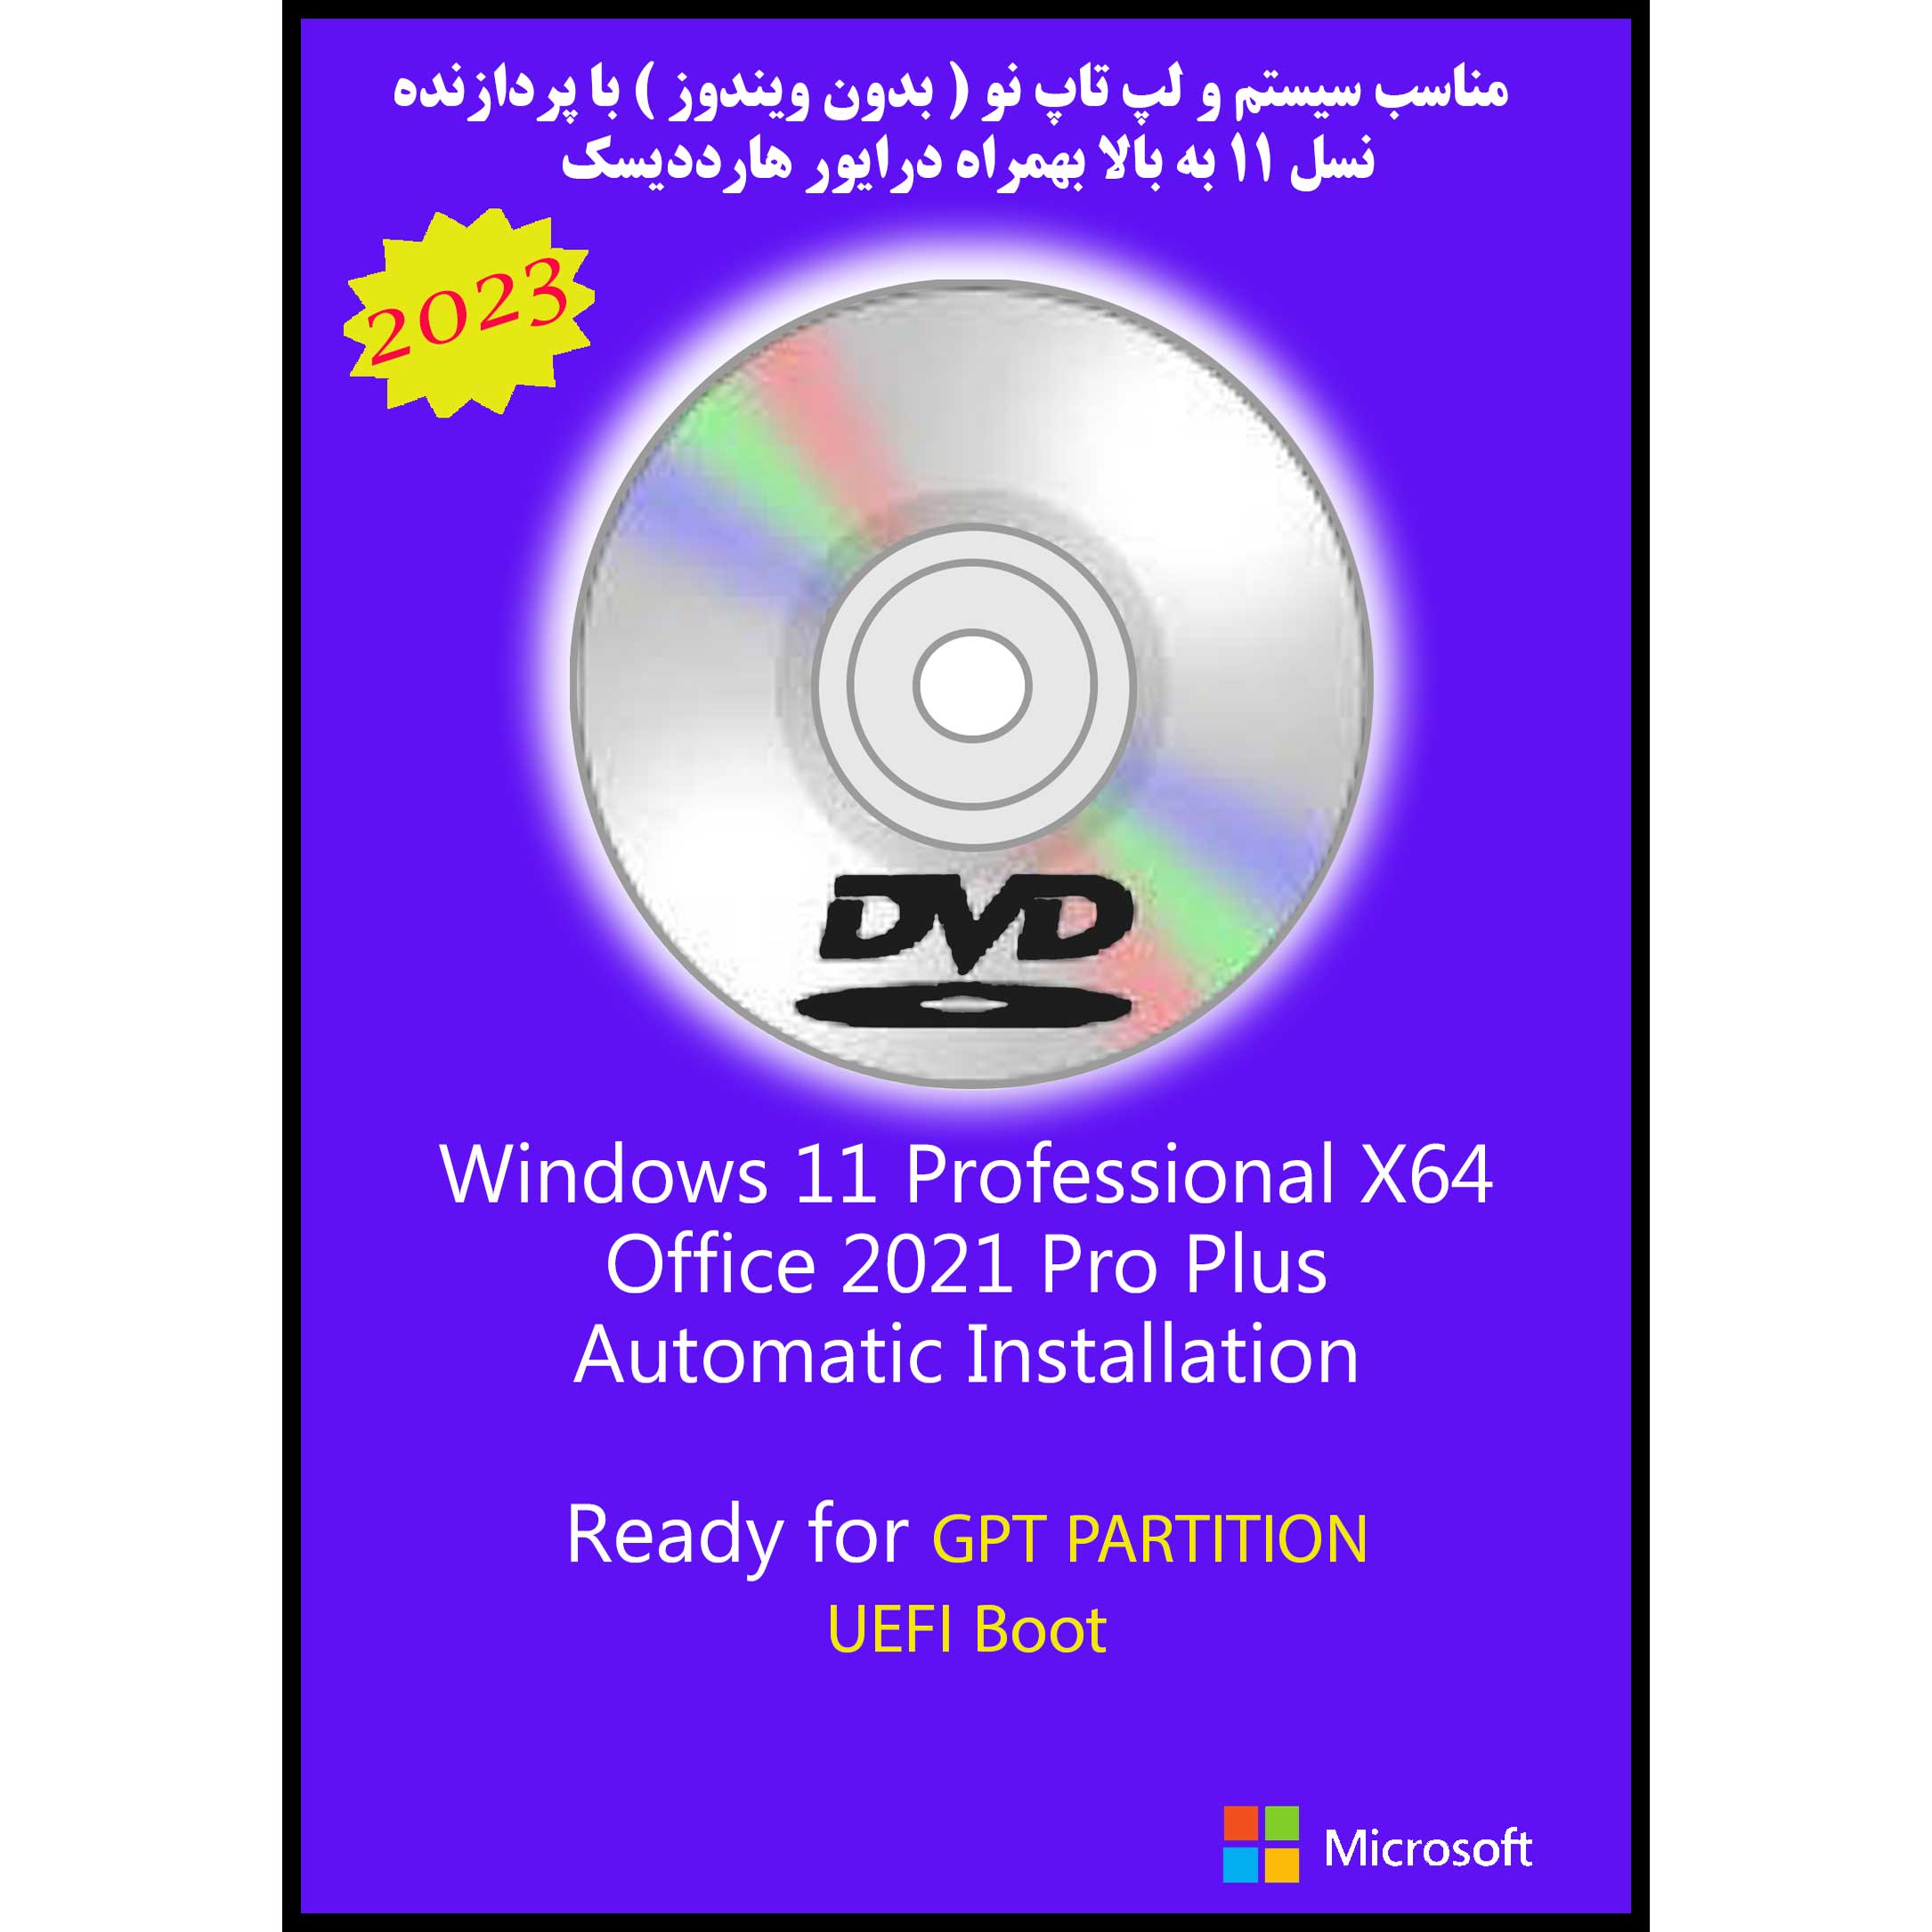 سیستم عامل Windows 11 Pro X64 2023 DVD5 UEFI - Office 2021 Pro Plus نشر مایکروسافت